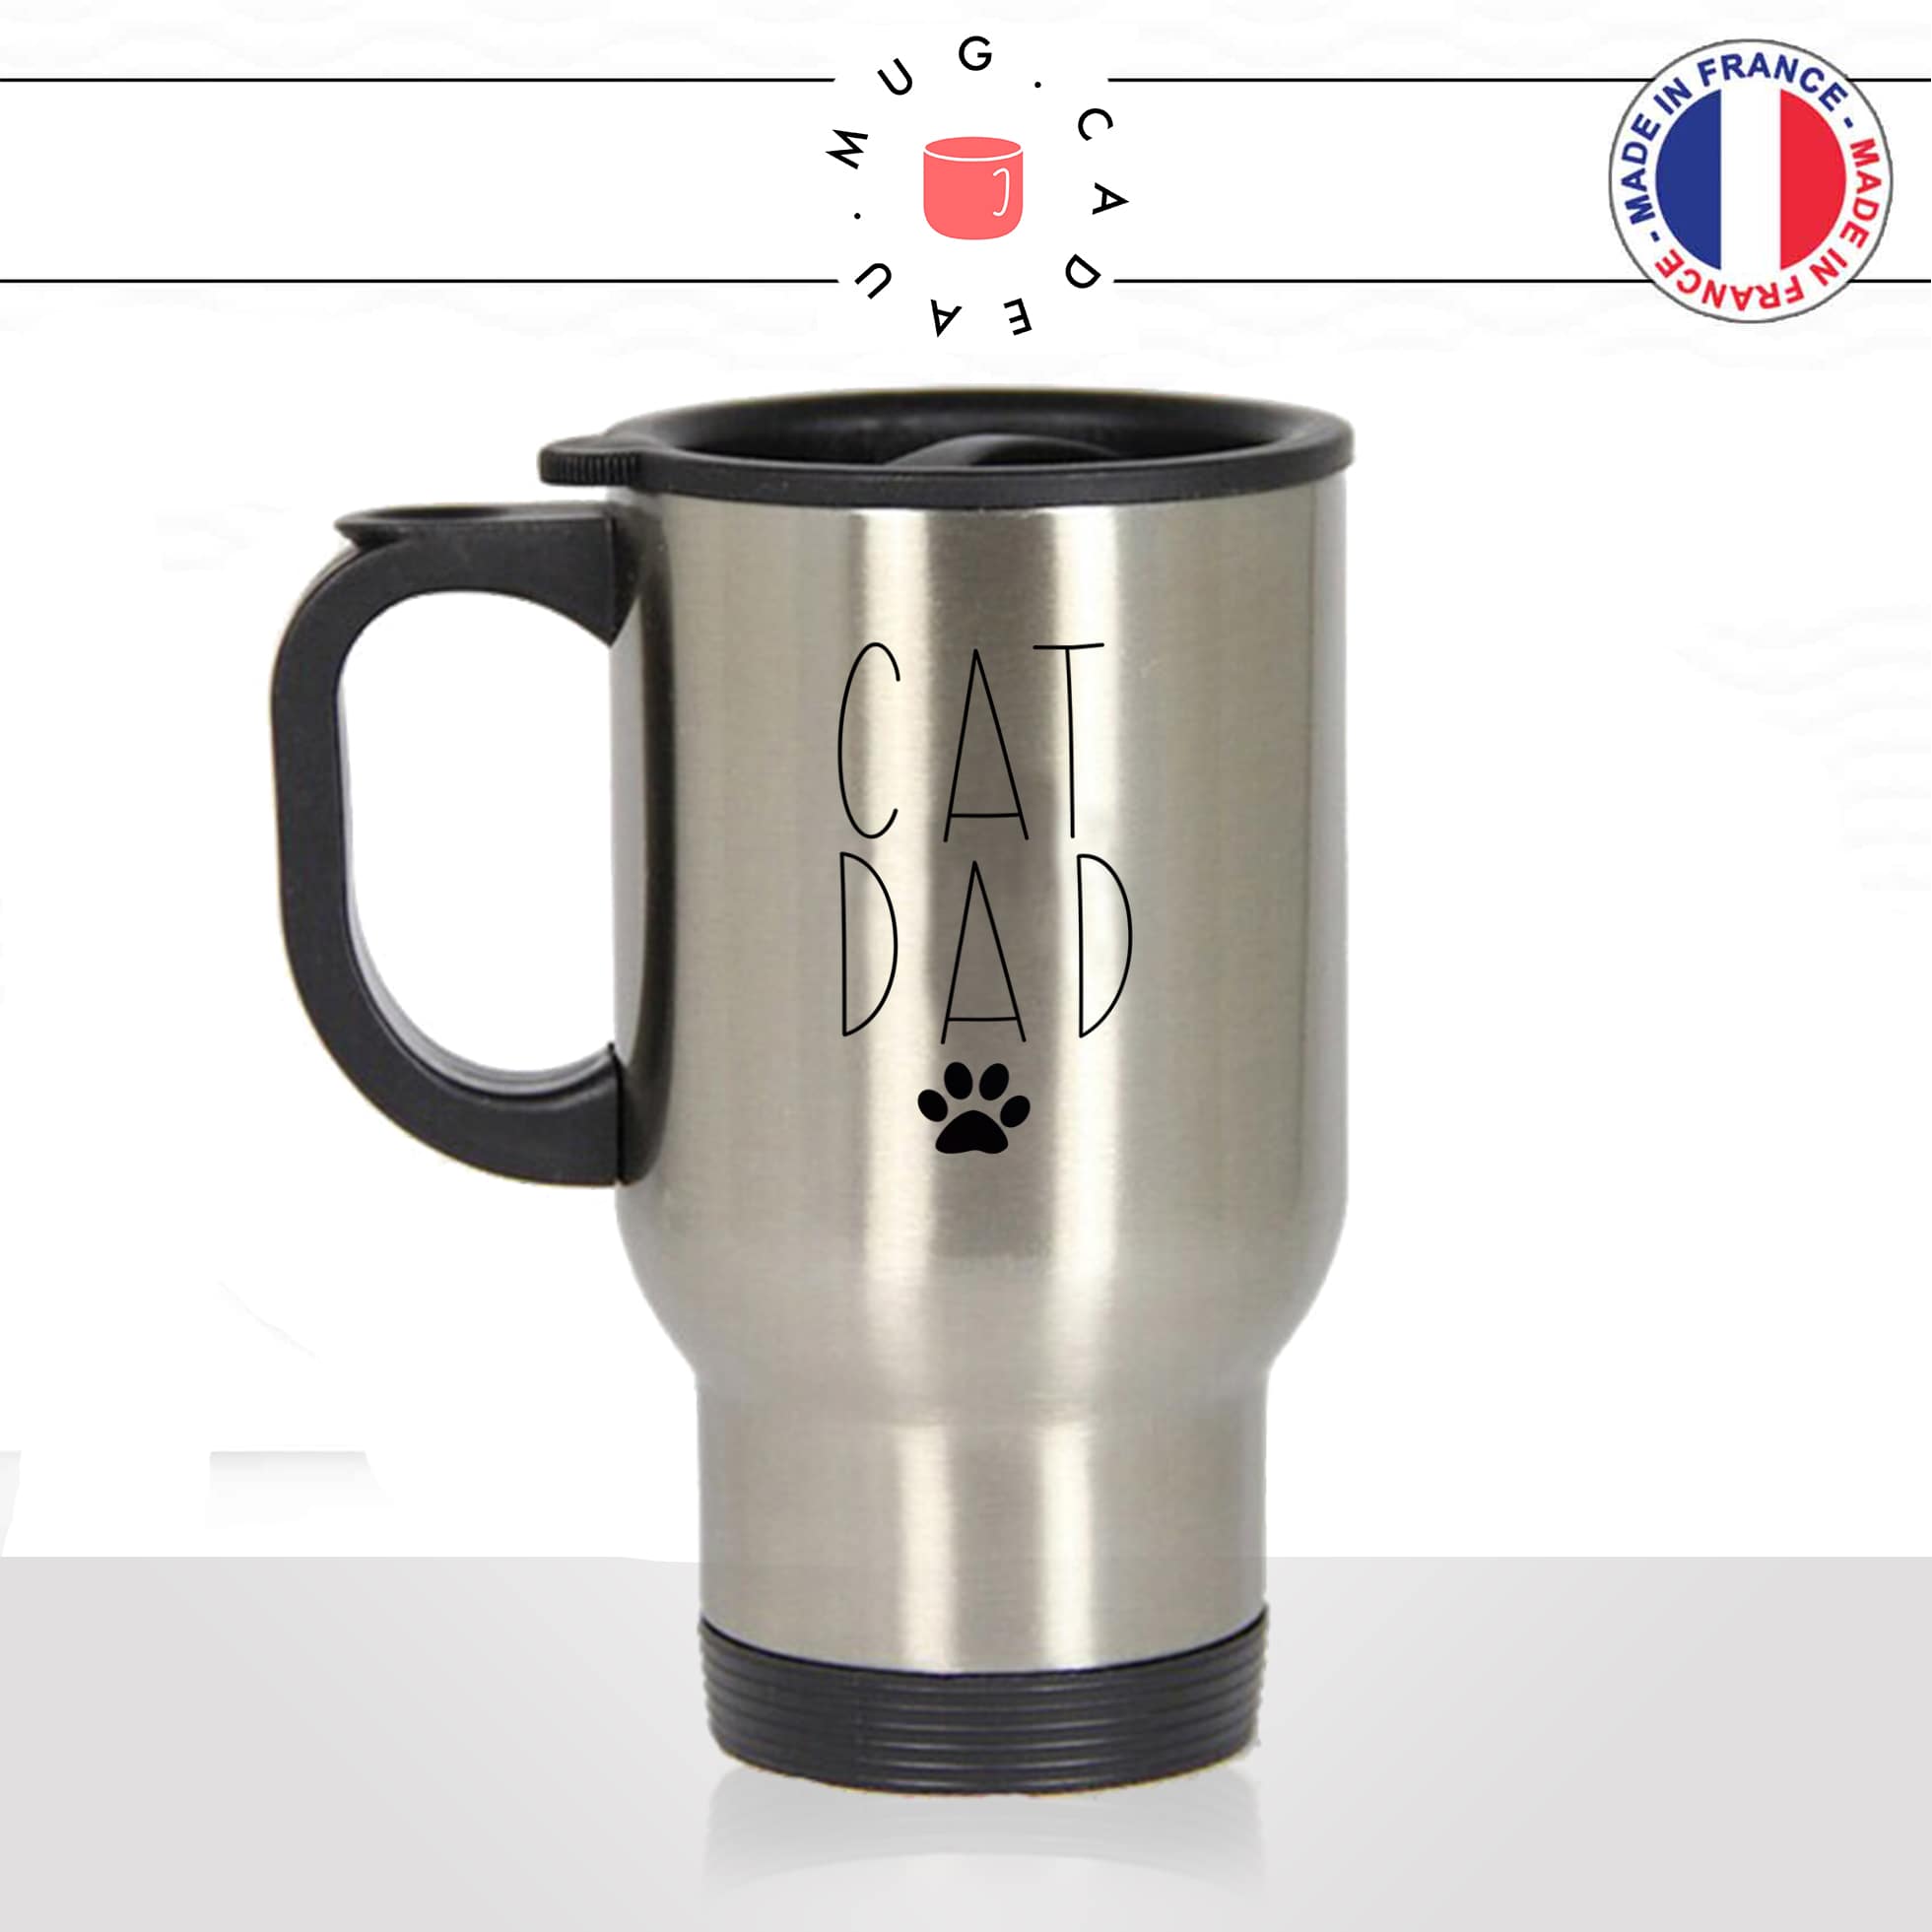 mug-tasse-thermos-de-voyage-café-thé-boisson-animal-animaux-chat-cat-dad-chaton-homme-papa-dessin-mignon-idée-cadeau-original-fun-cool-min